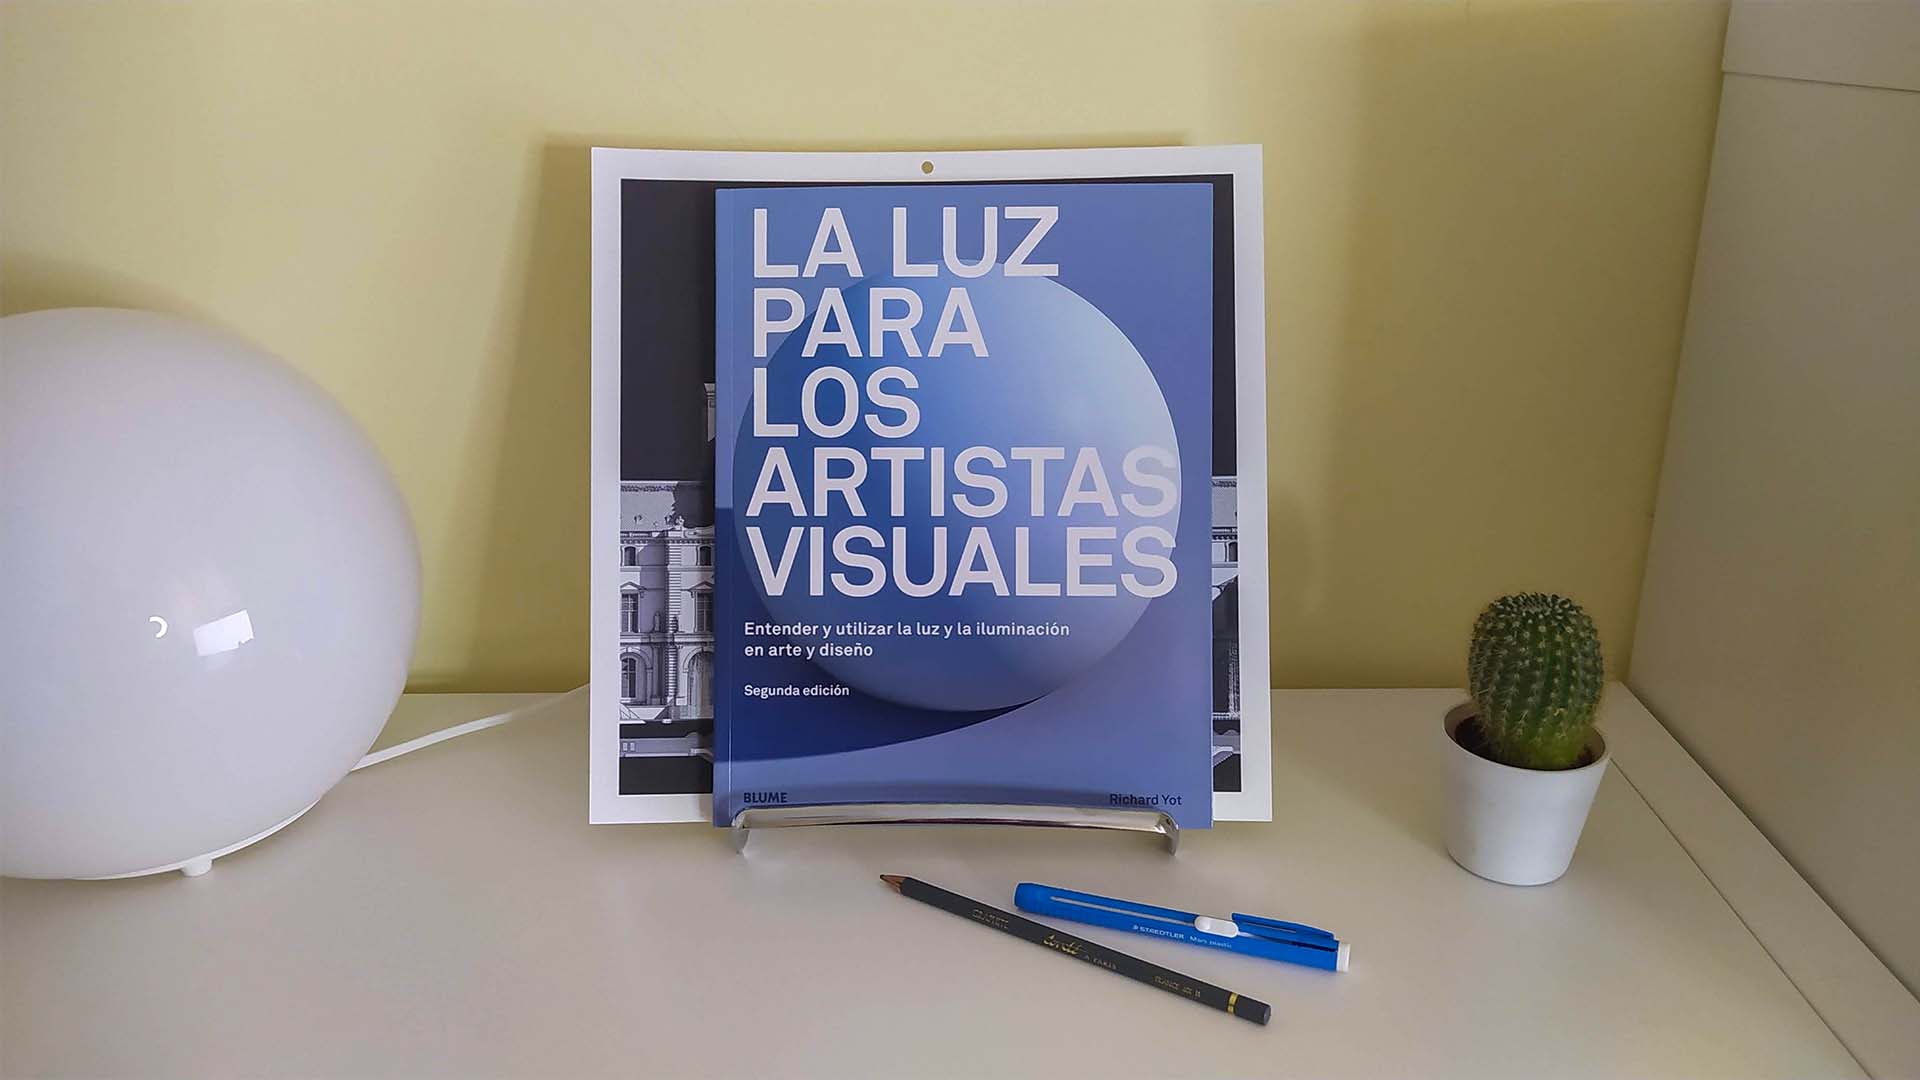 La luz para los artistas visuales, 2ª Edición (Richar Yot, 2019)